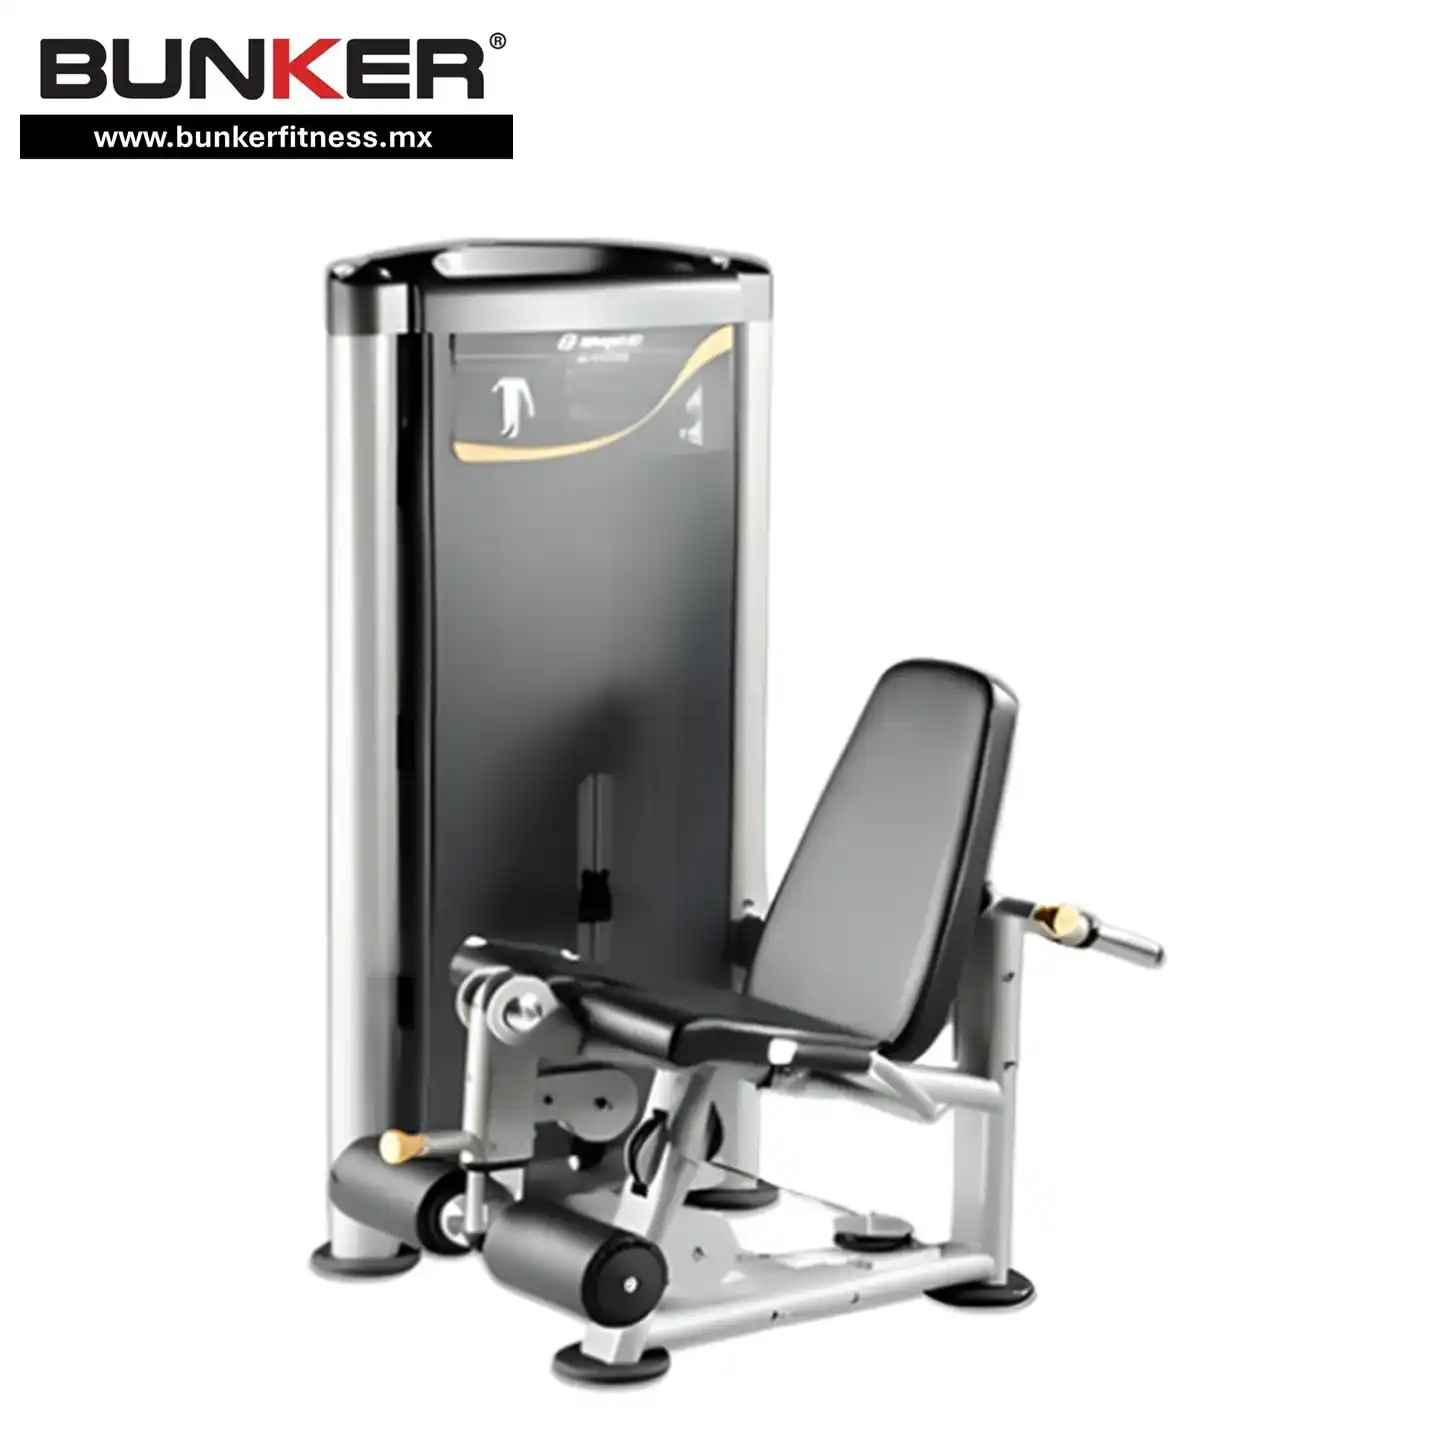 hs extension de pierna con peso integrado para ejercicio y gimnasio en casa bunker gym bunker fitness